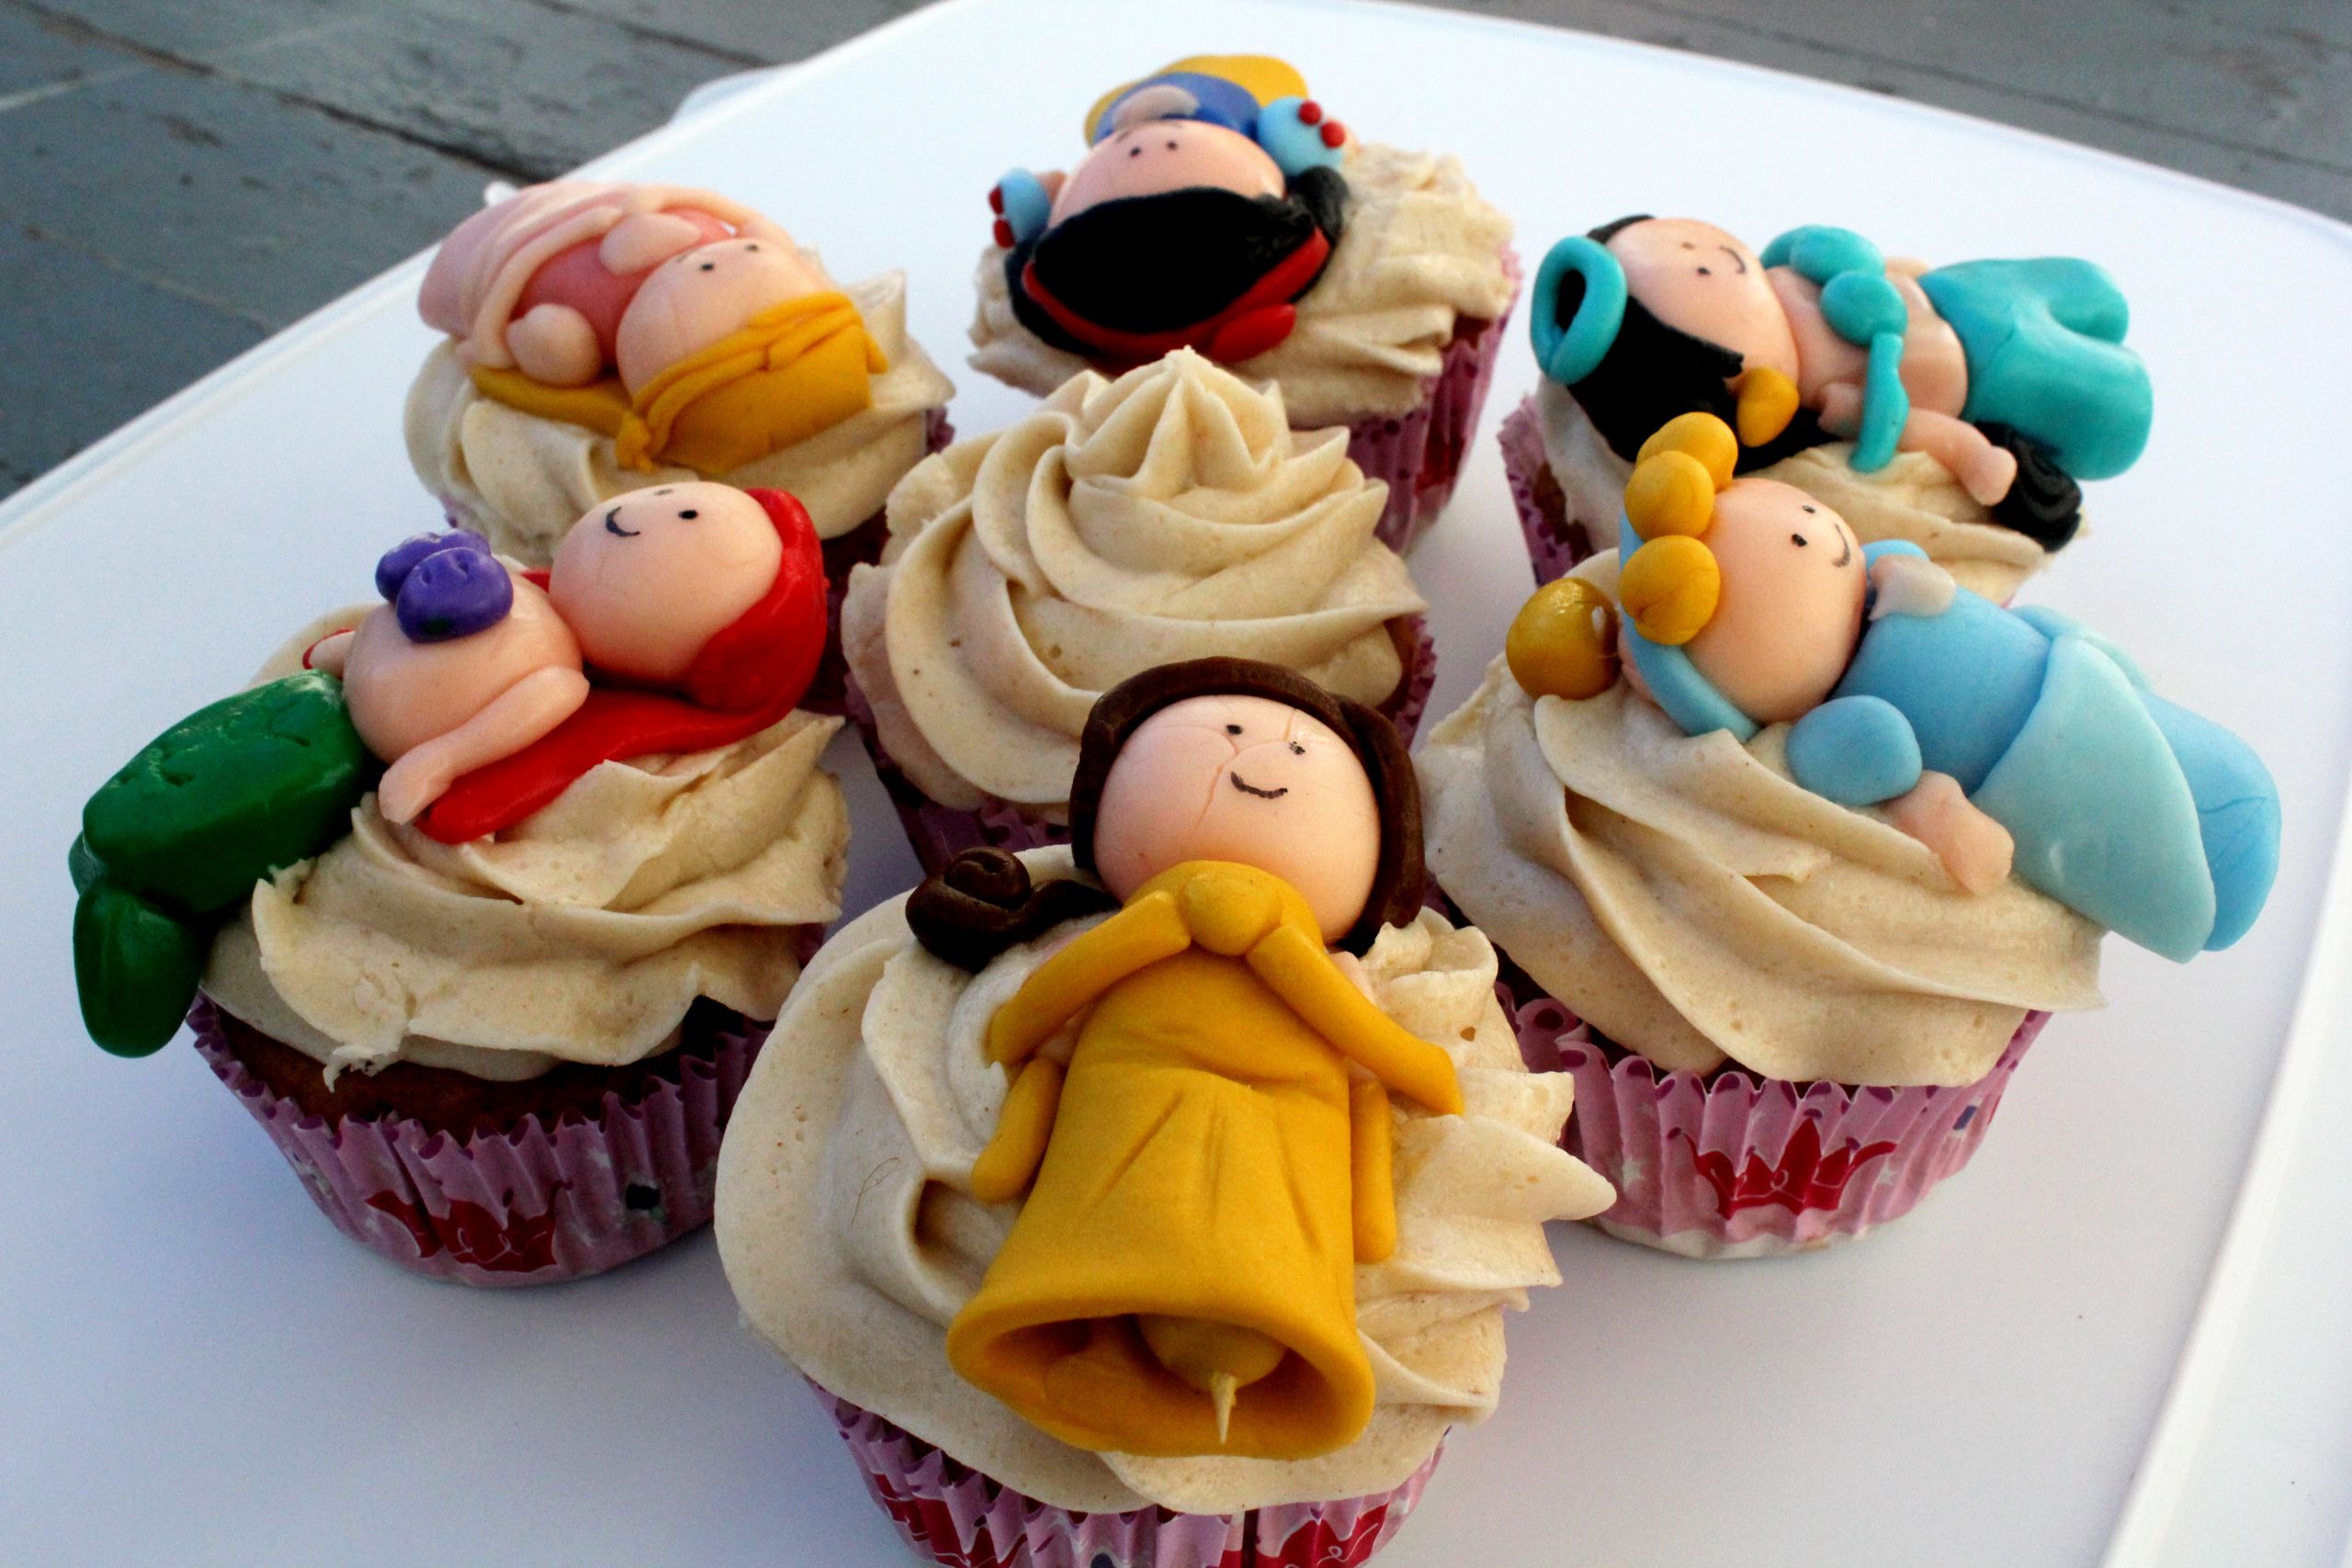 Disney Princess Cupcakes
 Disney Princess Cupcakes